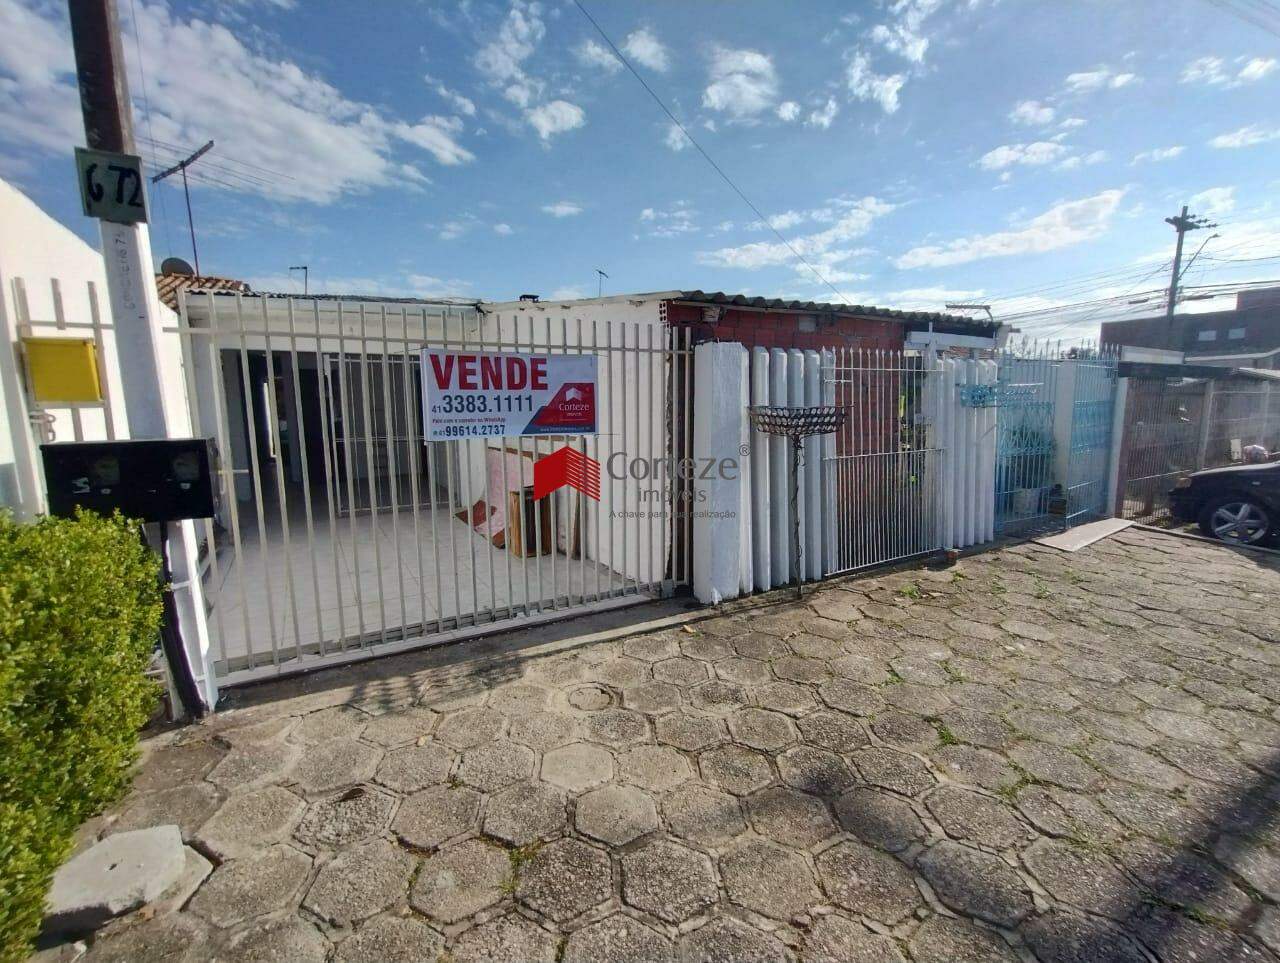 Terreno à venda com duas casas, nas proximidades Almirante Alexandrino localizado no bairro Parque da Fonte